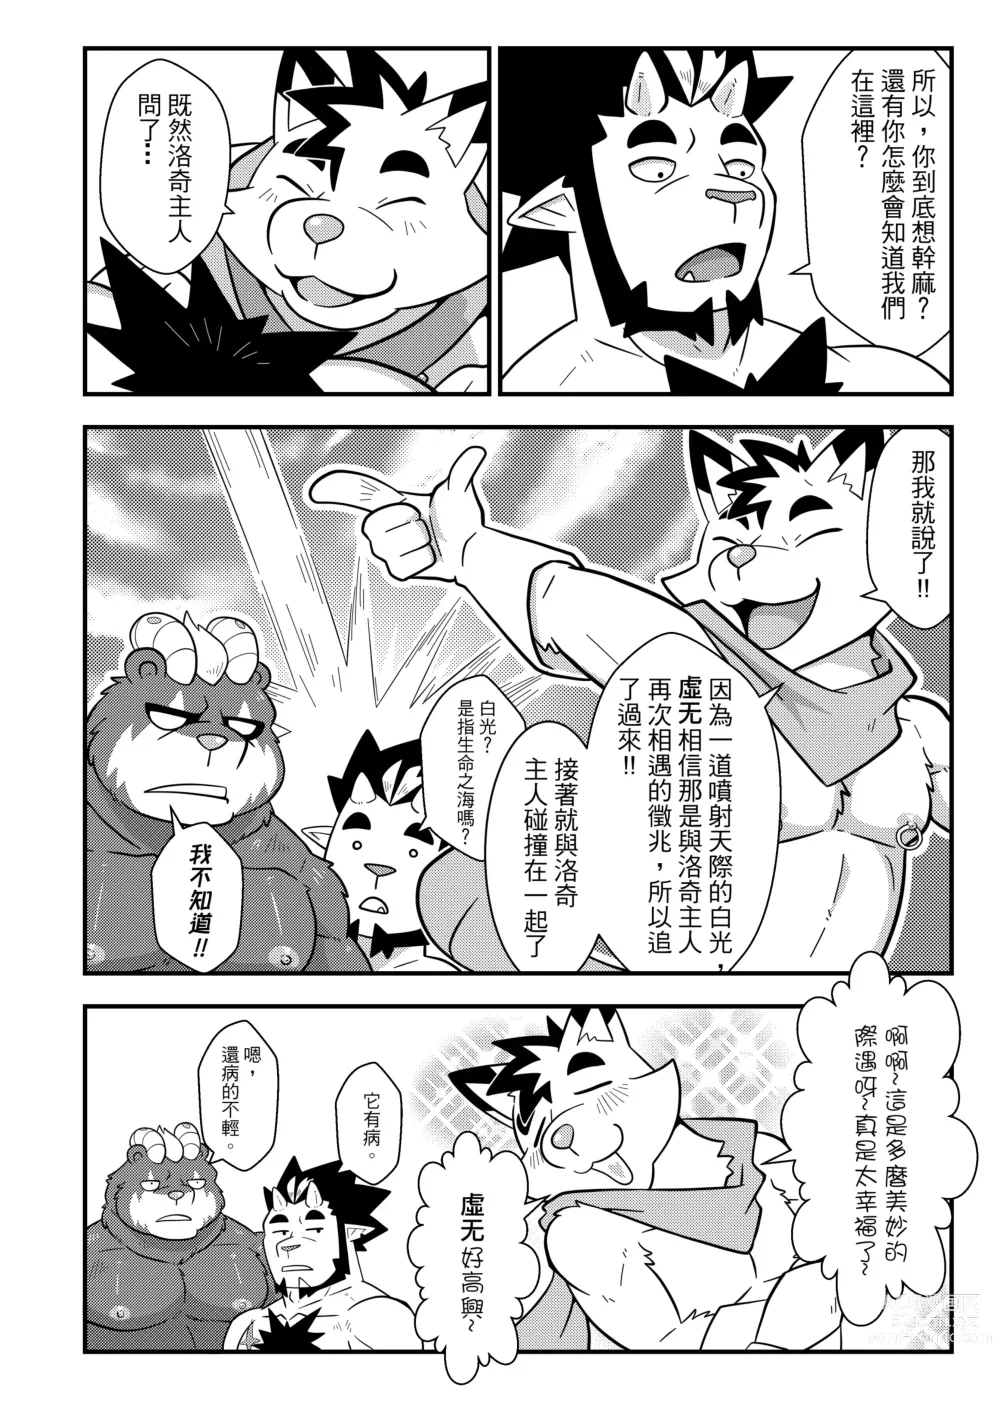 Page 11 of doujinshi 勇者的大小只有魔王塞得下4